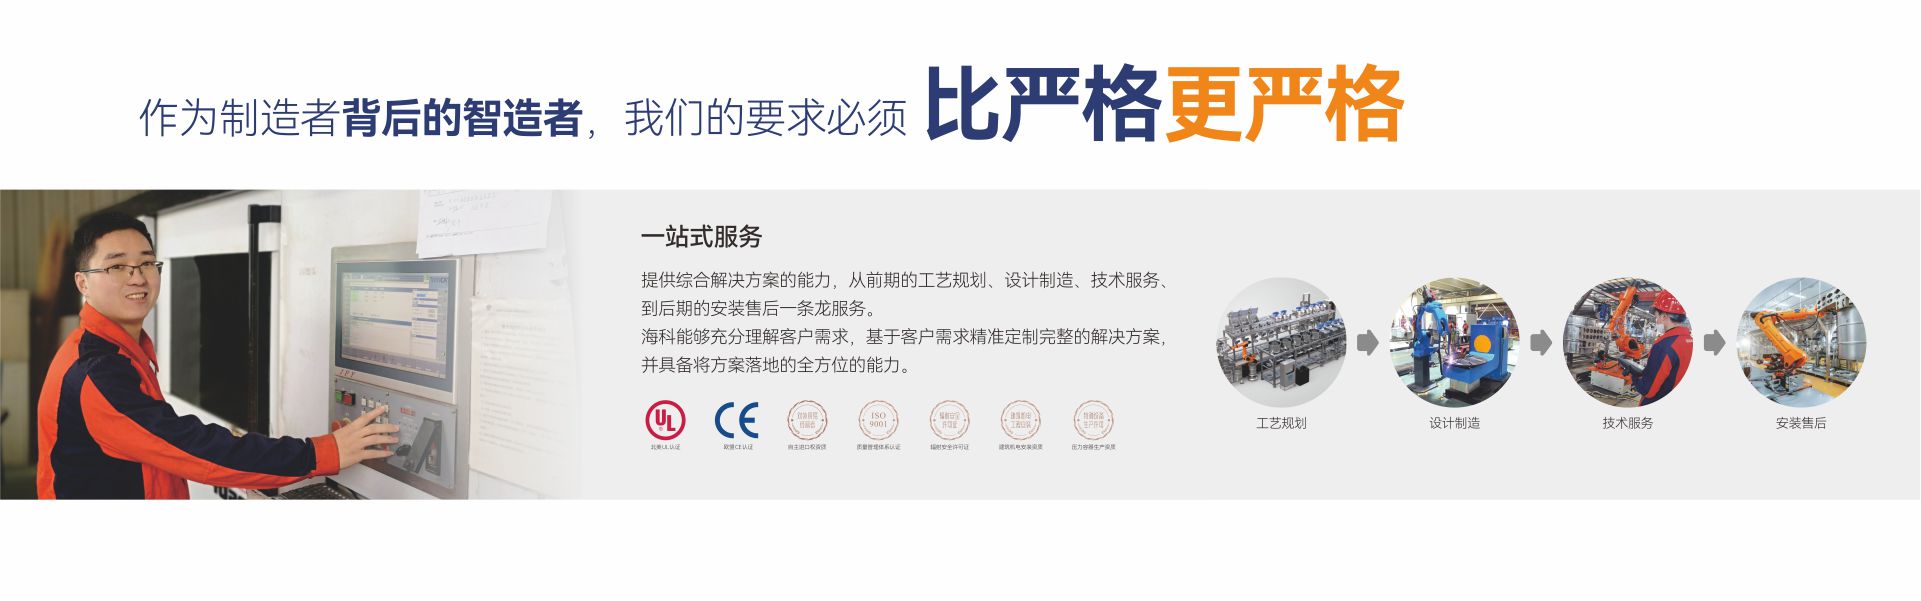 关于当前产品248彩票软件·(中国)官方网站的成功案例等相关图片